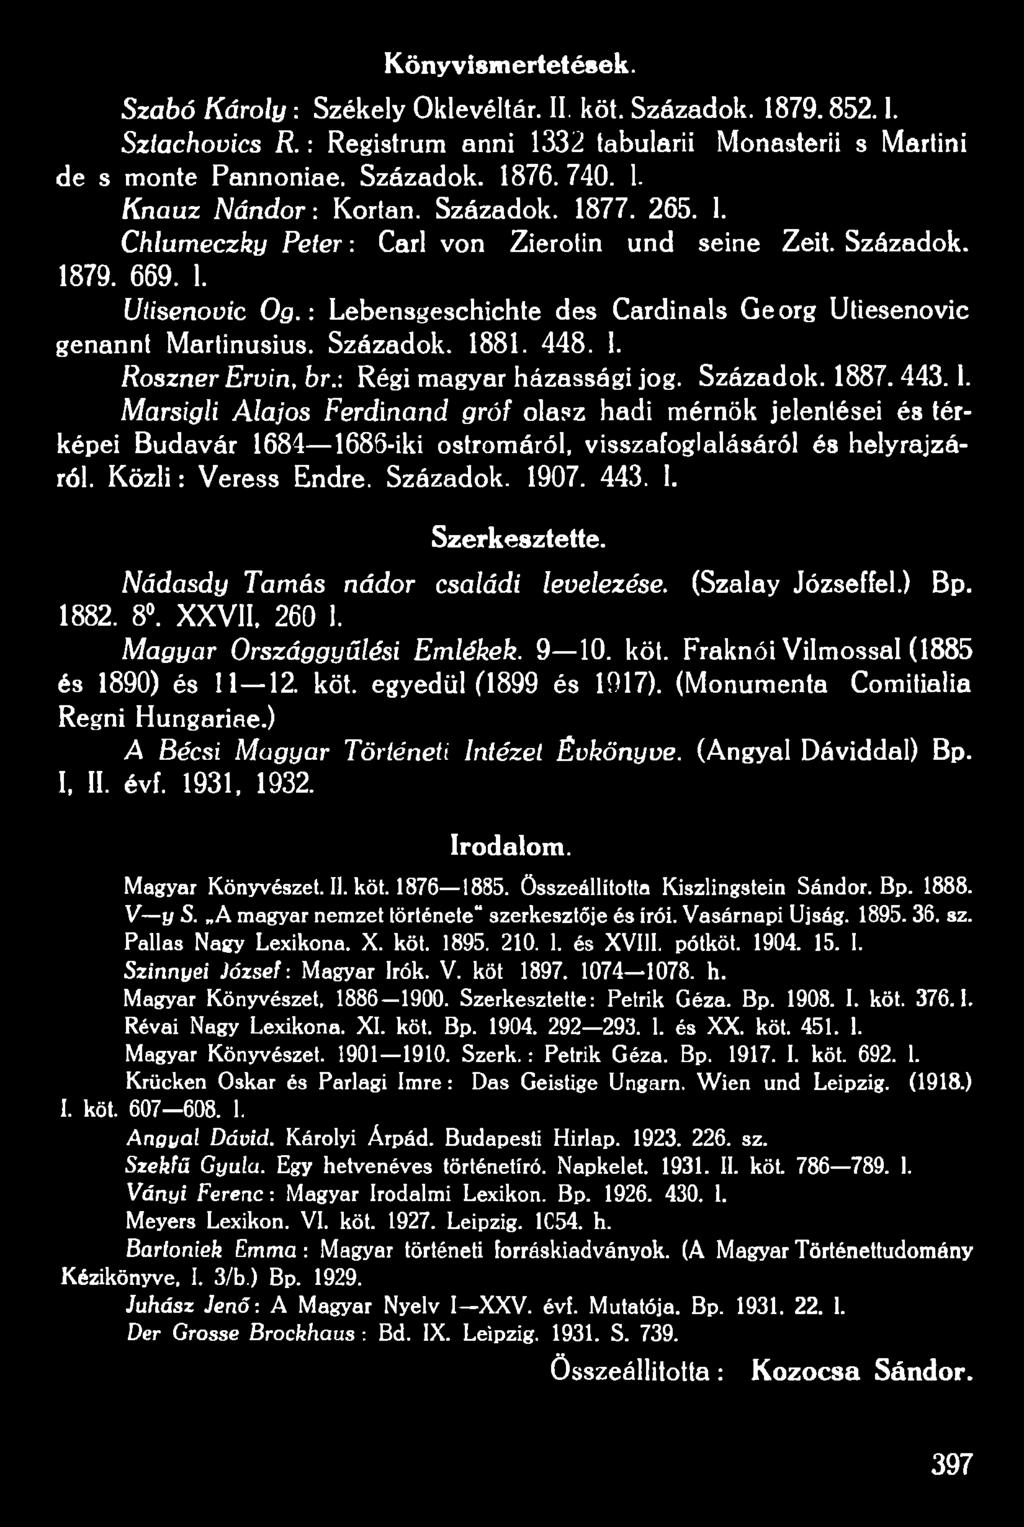 Fraknói Vilmossal (1885 és 1890) és 11 12. köt. egyedül (1899 és 1917). (Monumenta Comitialia Regni Hungáriáé.) A Bécsi Magyar Történeti Intézet Évkönyve. (Angyal Dáviddal) Bp. I, II. évf. 1931, 1932.